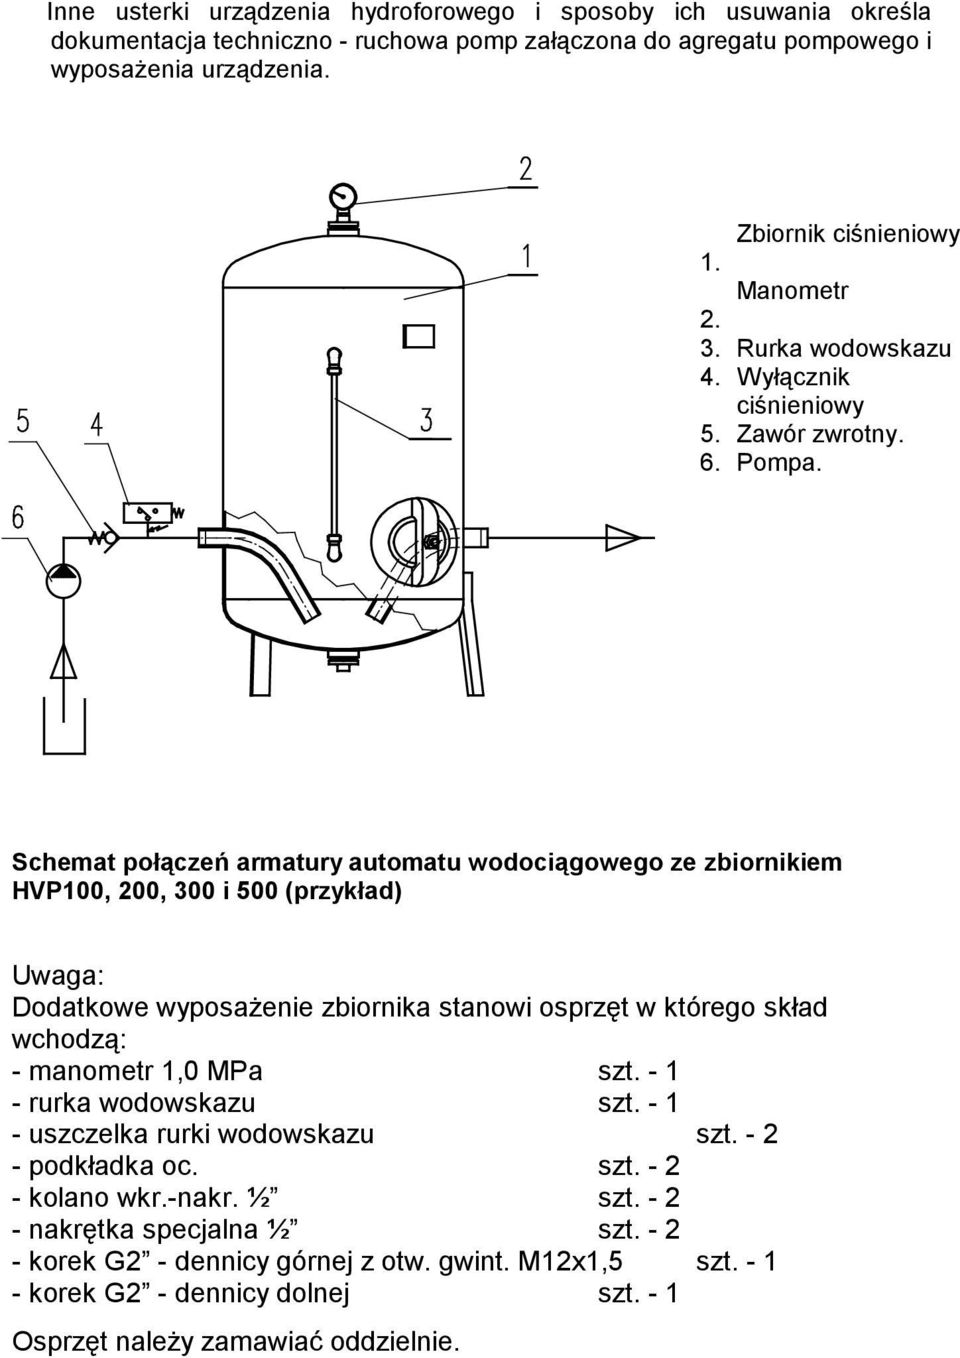 Schemat połączeń armatury automatu wodociągowego ze zbiornikiem 100, 200, 300 i 500 (przykład) Uwaga: Dodatkowe wyposażenie zbiornika stanowi osprzęt w którego skład wchodzą: - manometr 1,0